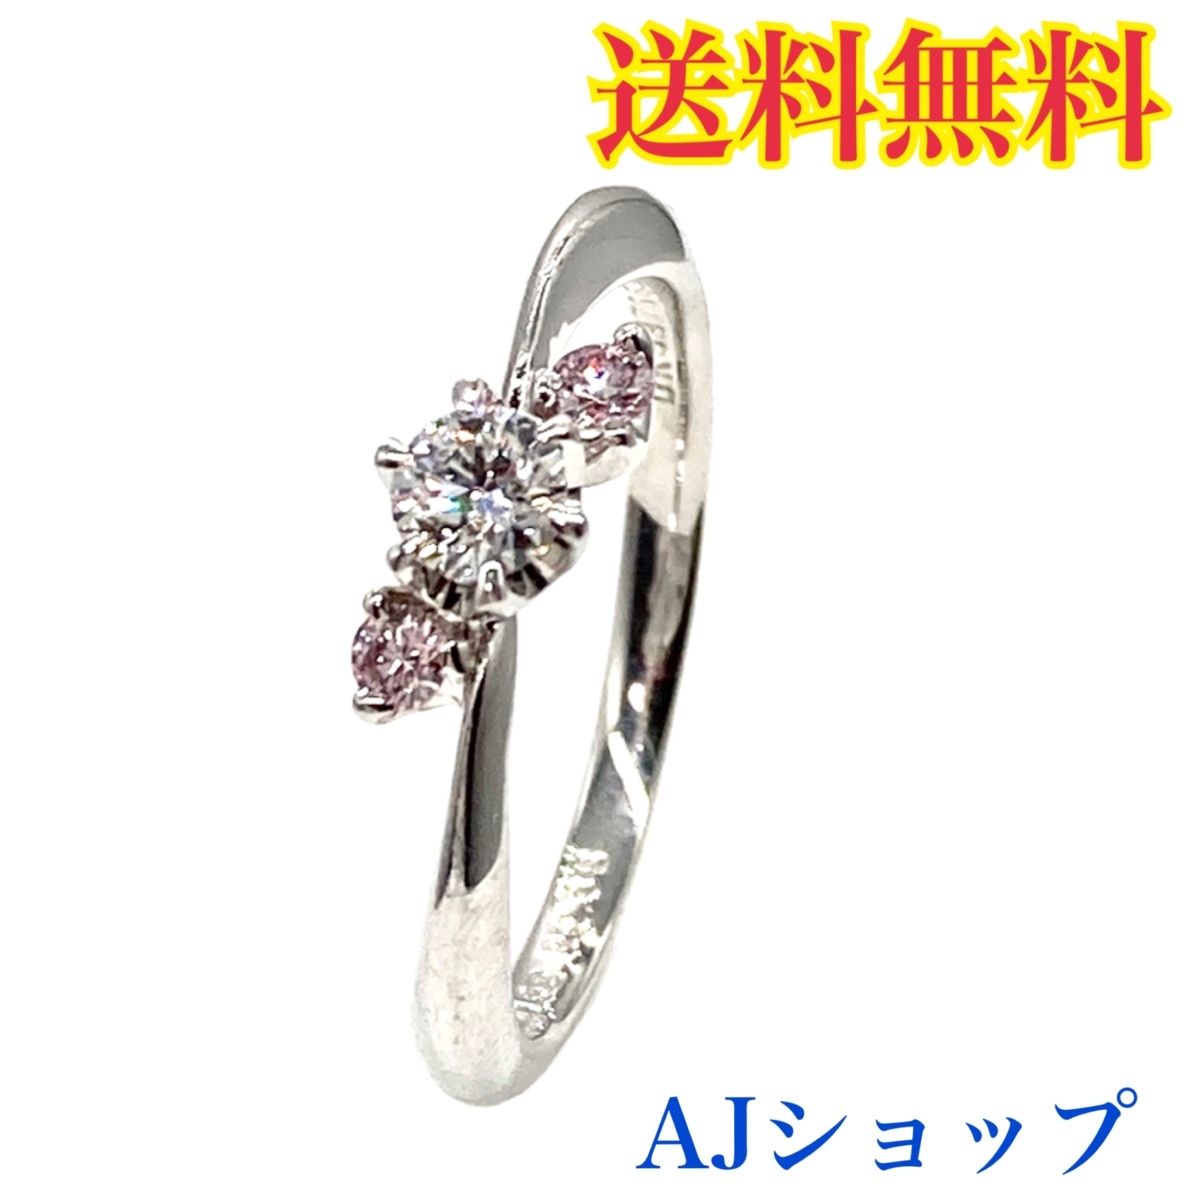 発売モデル ⭐️4°C ダイヤモンドリング 10号 0.207 F HC 3EX⭐️婚約